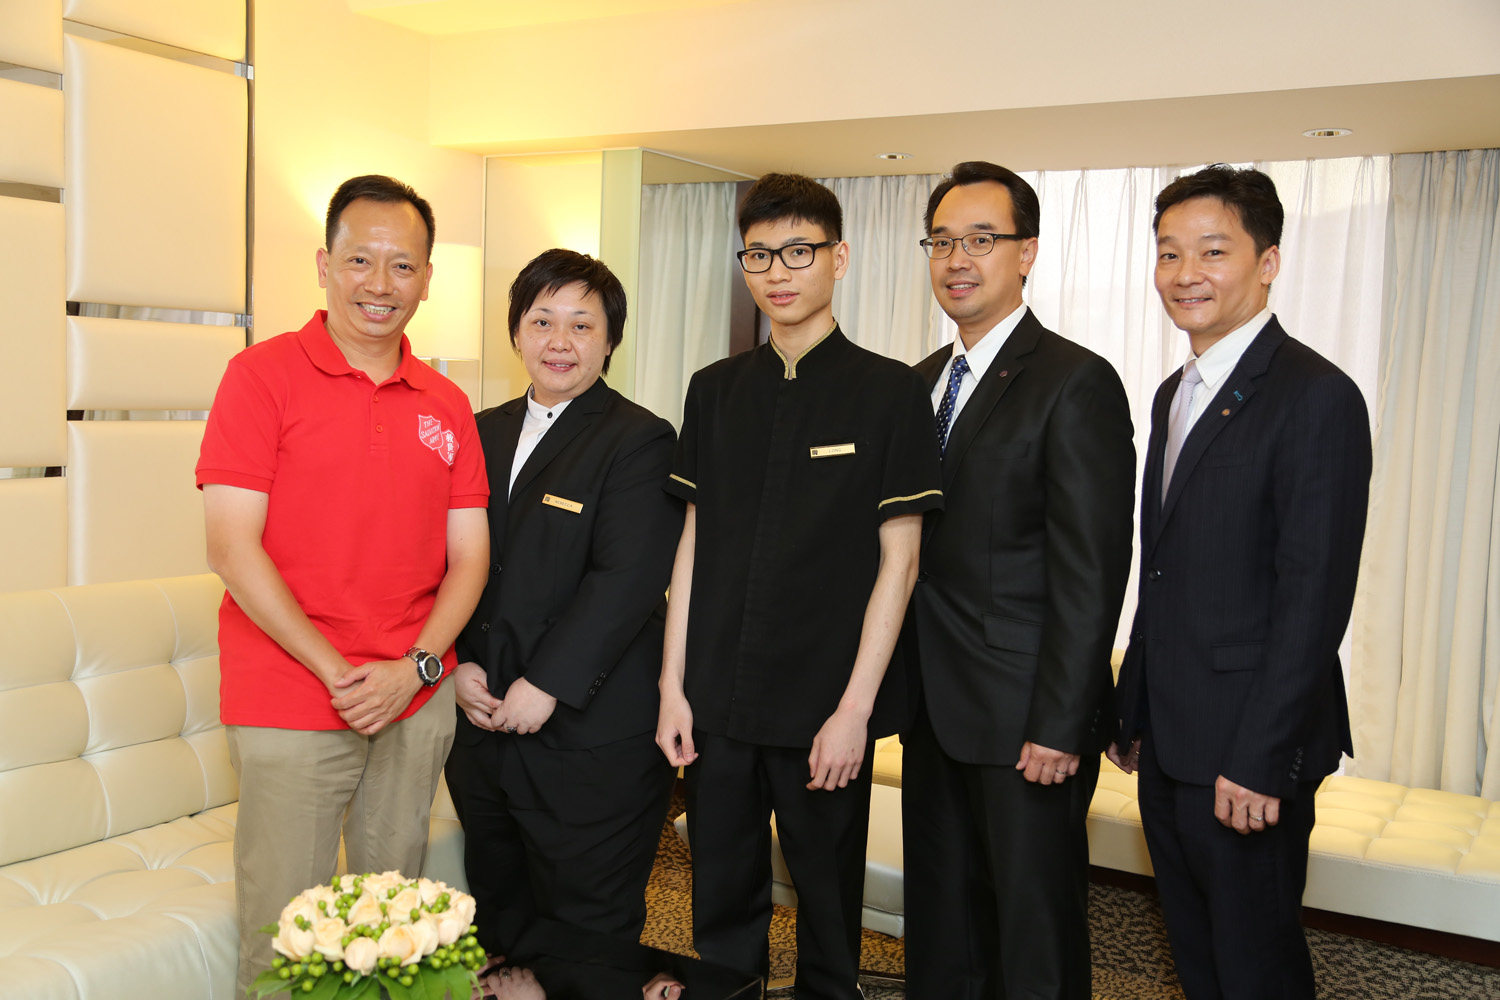 富豪九龍酒店參與救世軍和國際扶輪 3450 地區合辦的「扶輪青年師徒計劃」。